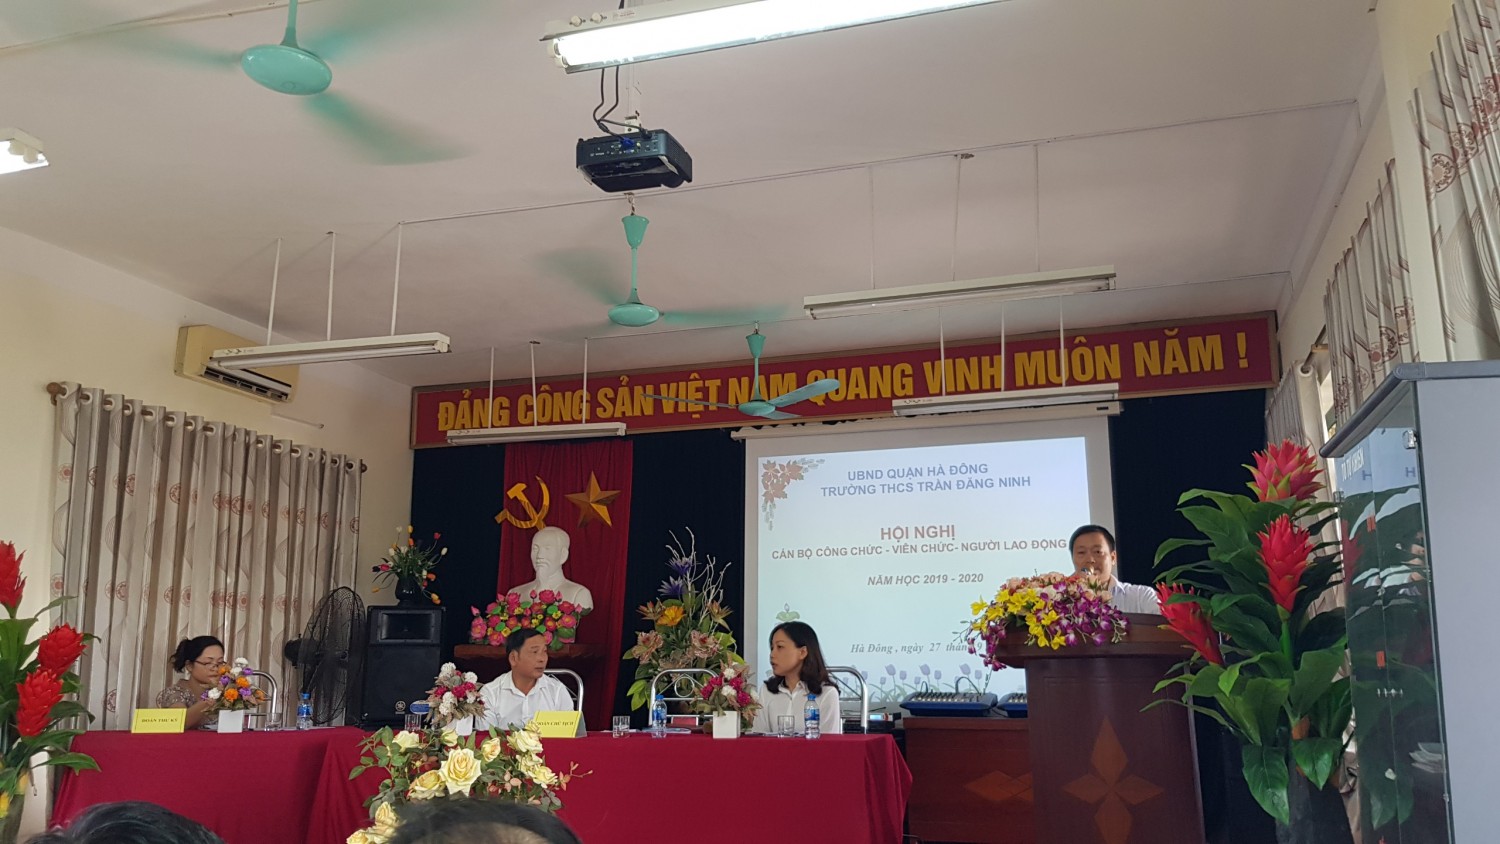 Trường THCS Trần Đăng Ninh tổ chức Hội nghị cán bộ, viên chức năm học 2019 - 2020